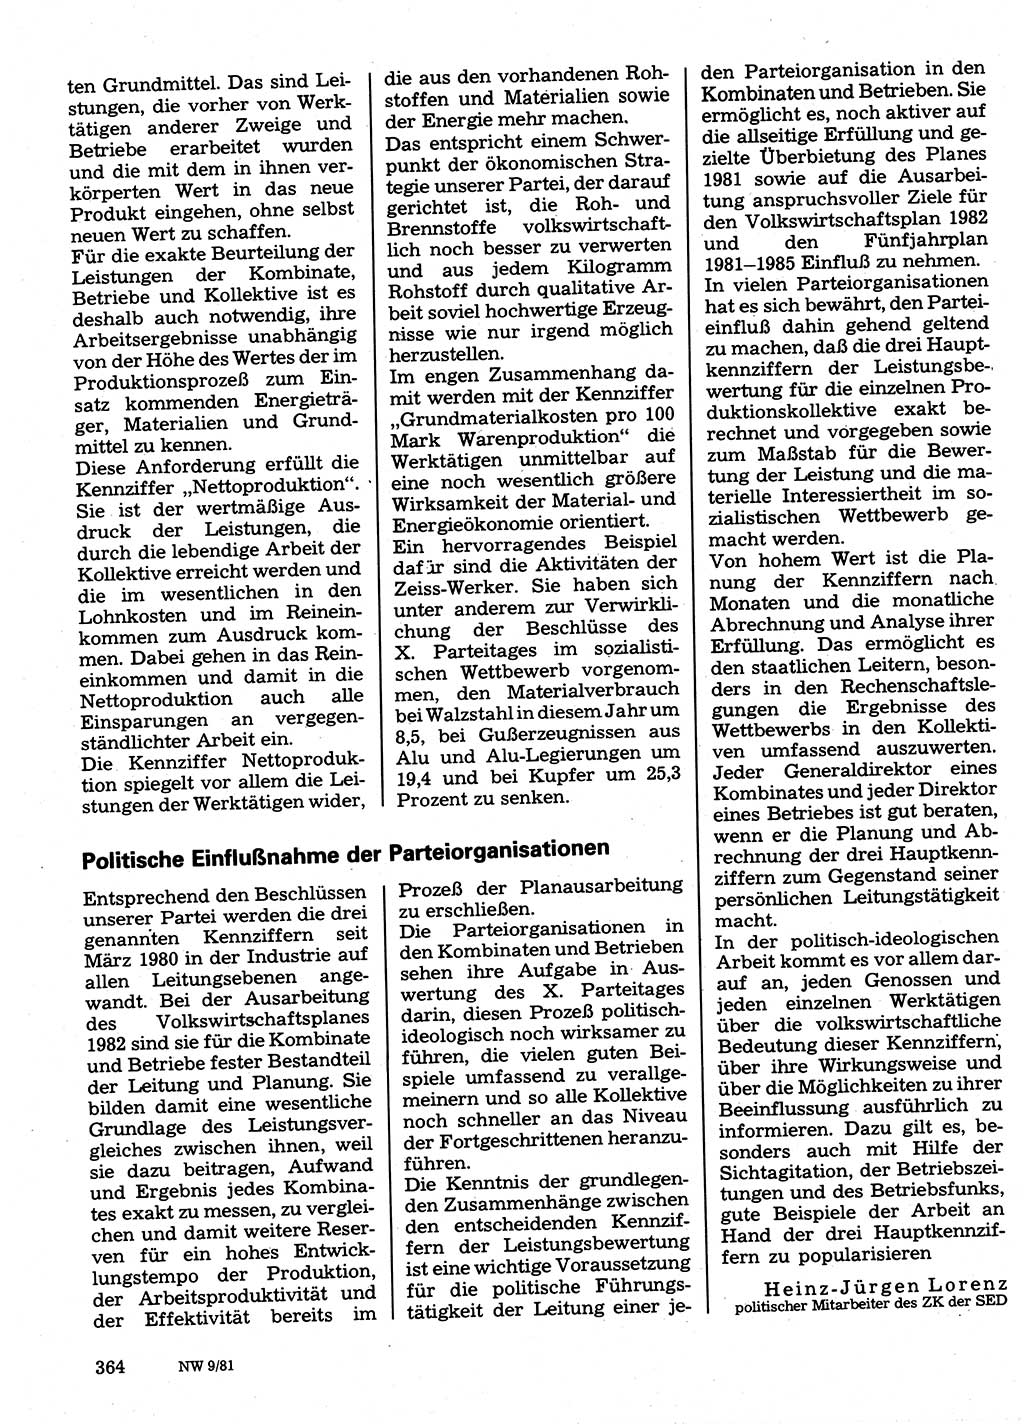 Neuer Weg (NW), Organ des Zentralkomitees (ZK) der SED (Sozialistische Einheitspartei Deutschlands) für Fragen des Parteilebens, 36. Jahrgang [Deutsche Demokratische Republik (DDR)] 1981, Seite 364 (NW ZK SED DDR 1981, S. 364)